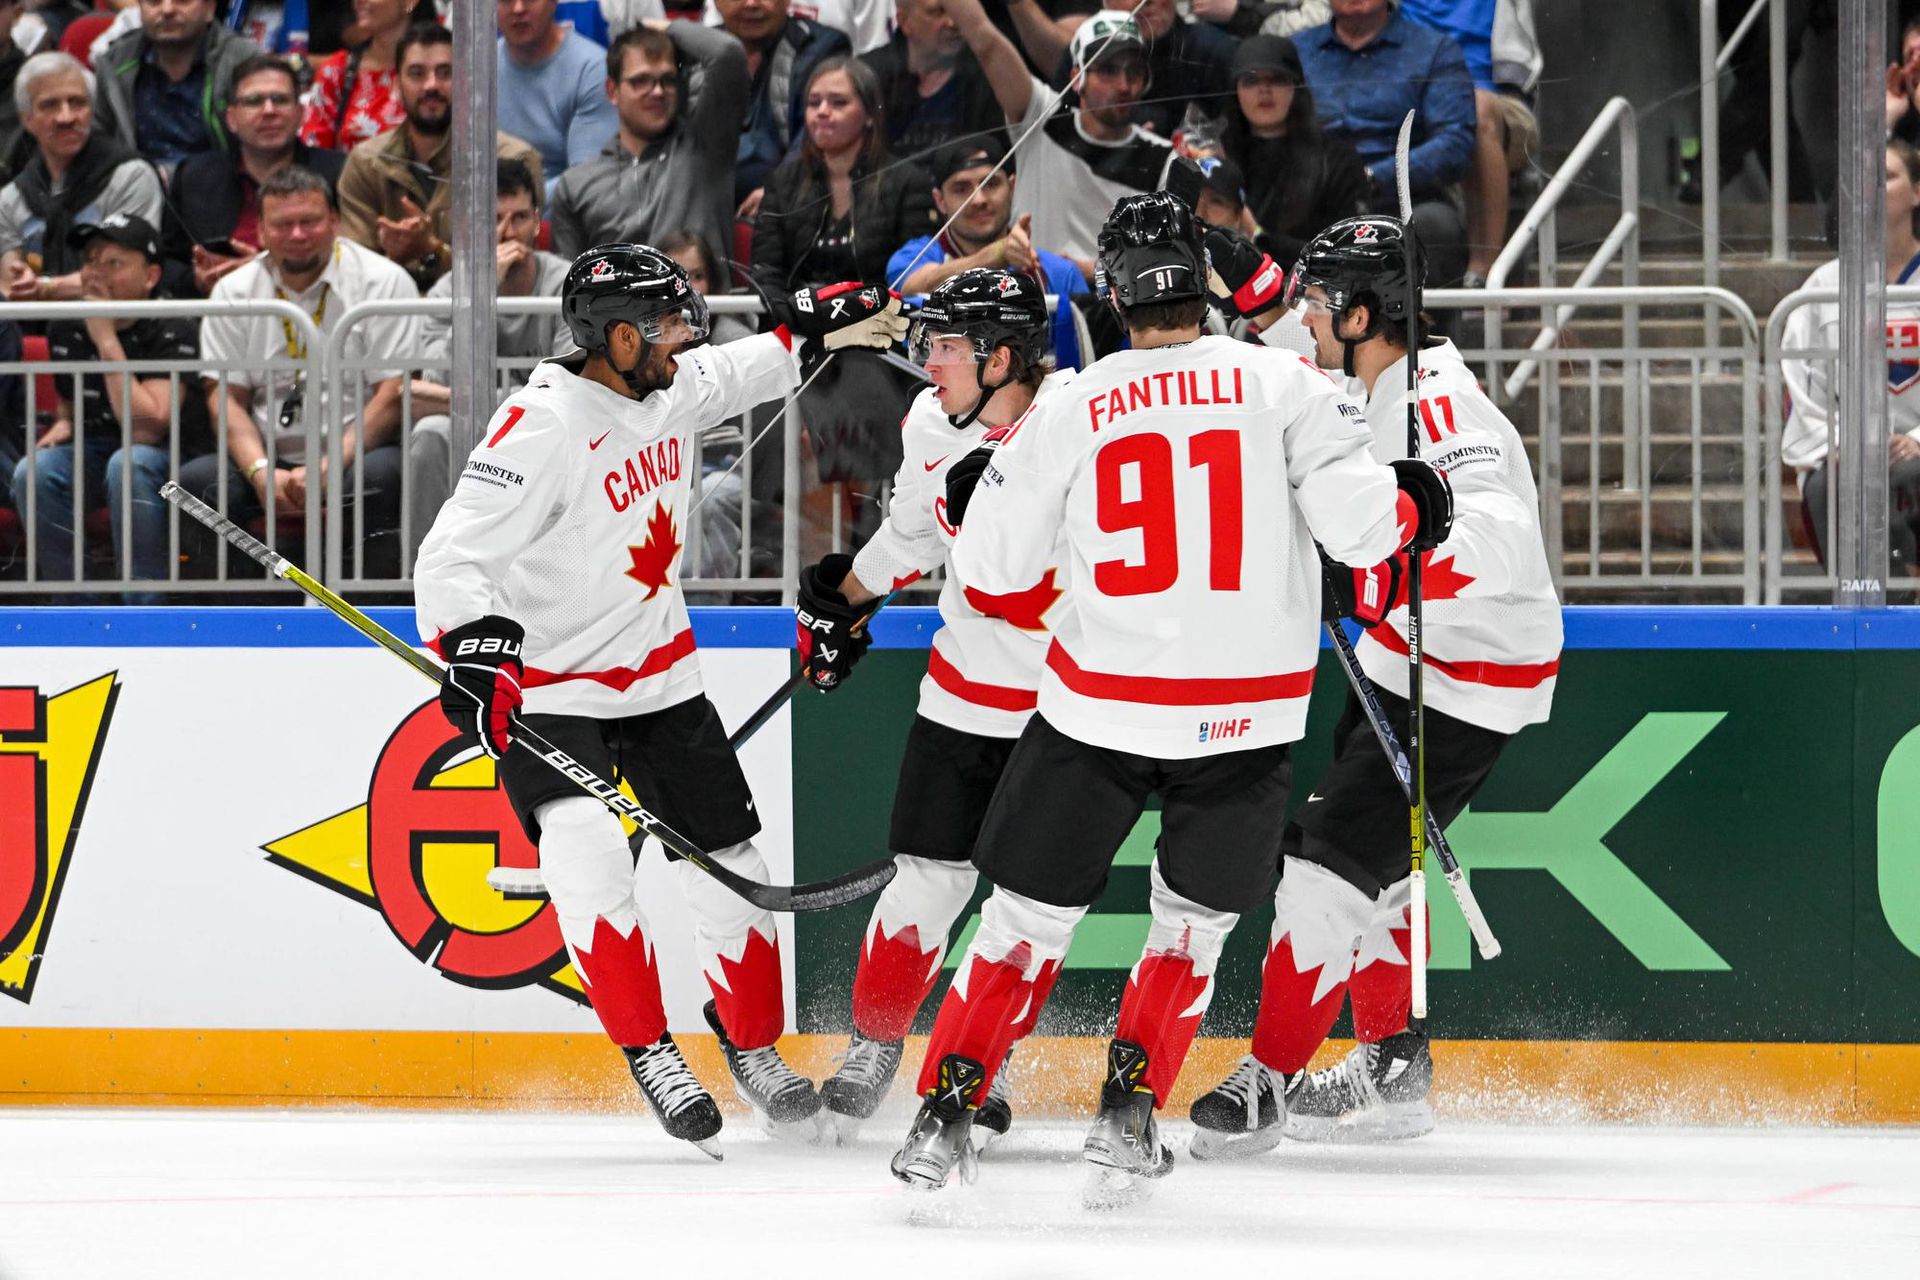 MS v hokeji 2023: Slovensko - Kanada (gólová radosť Kanaďanov) Zdroj: imago